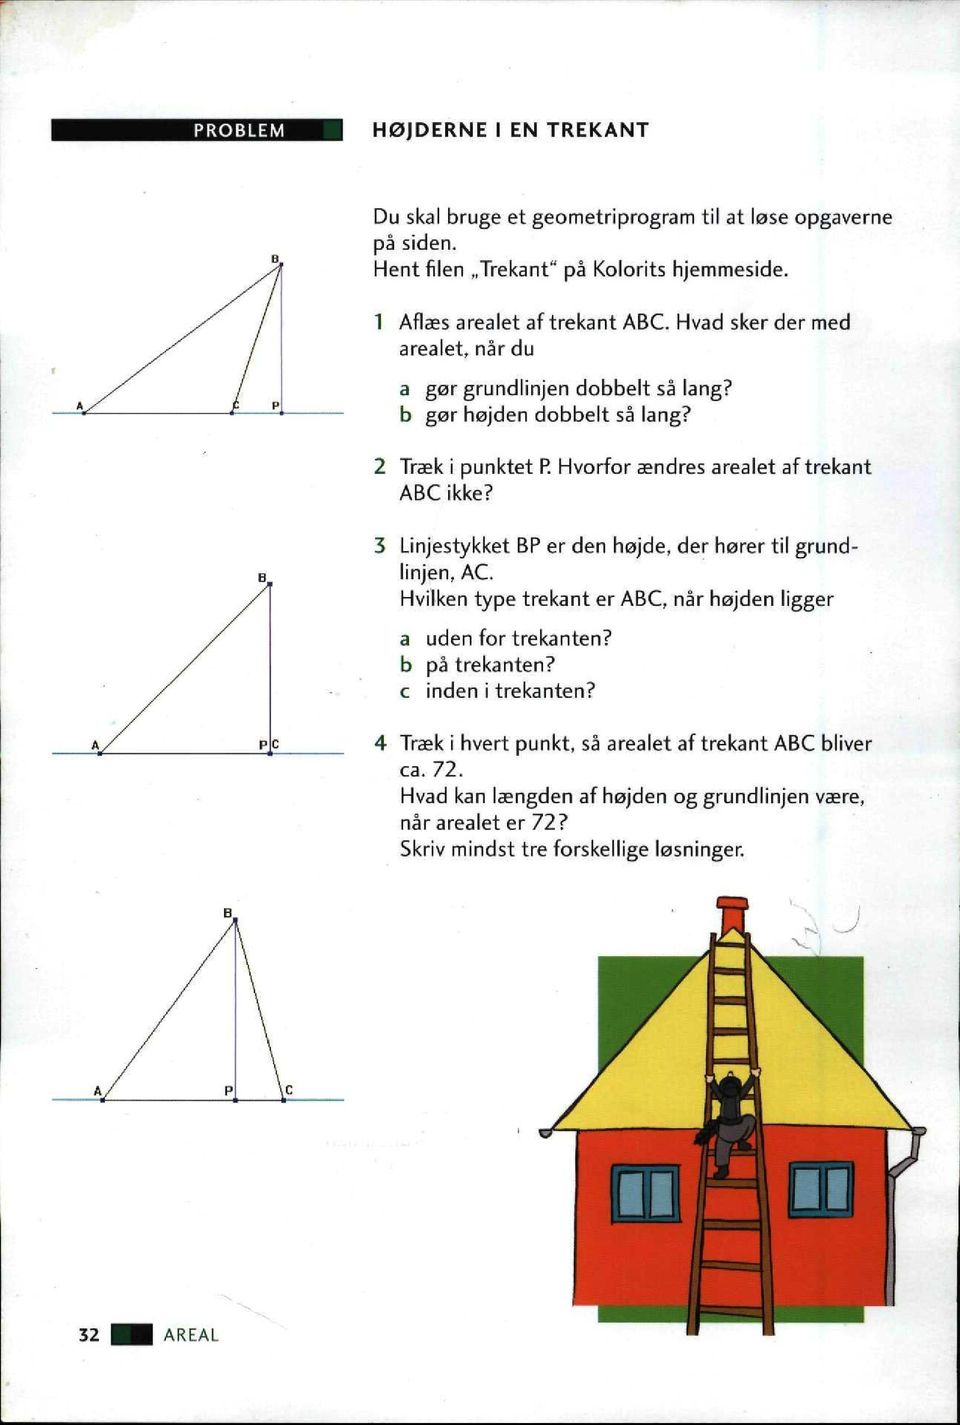 3 Linjestykket BP er den højde, der hører til grundlinjen, AC. Hvilken type trekant er ABC, når højden ligger a uden for trekanten? b på trekanten? c inden i trekanten?